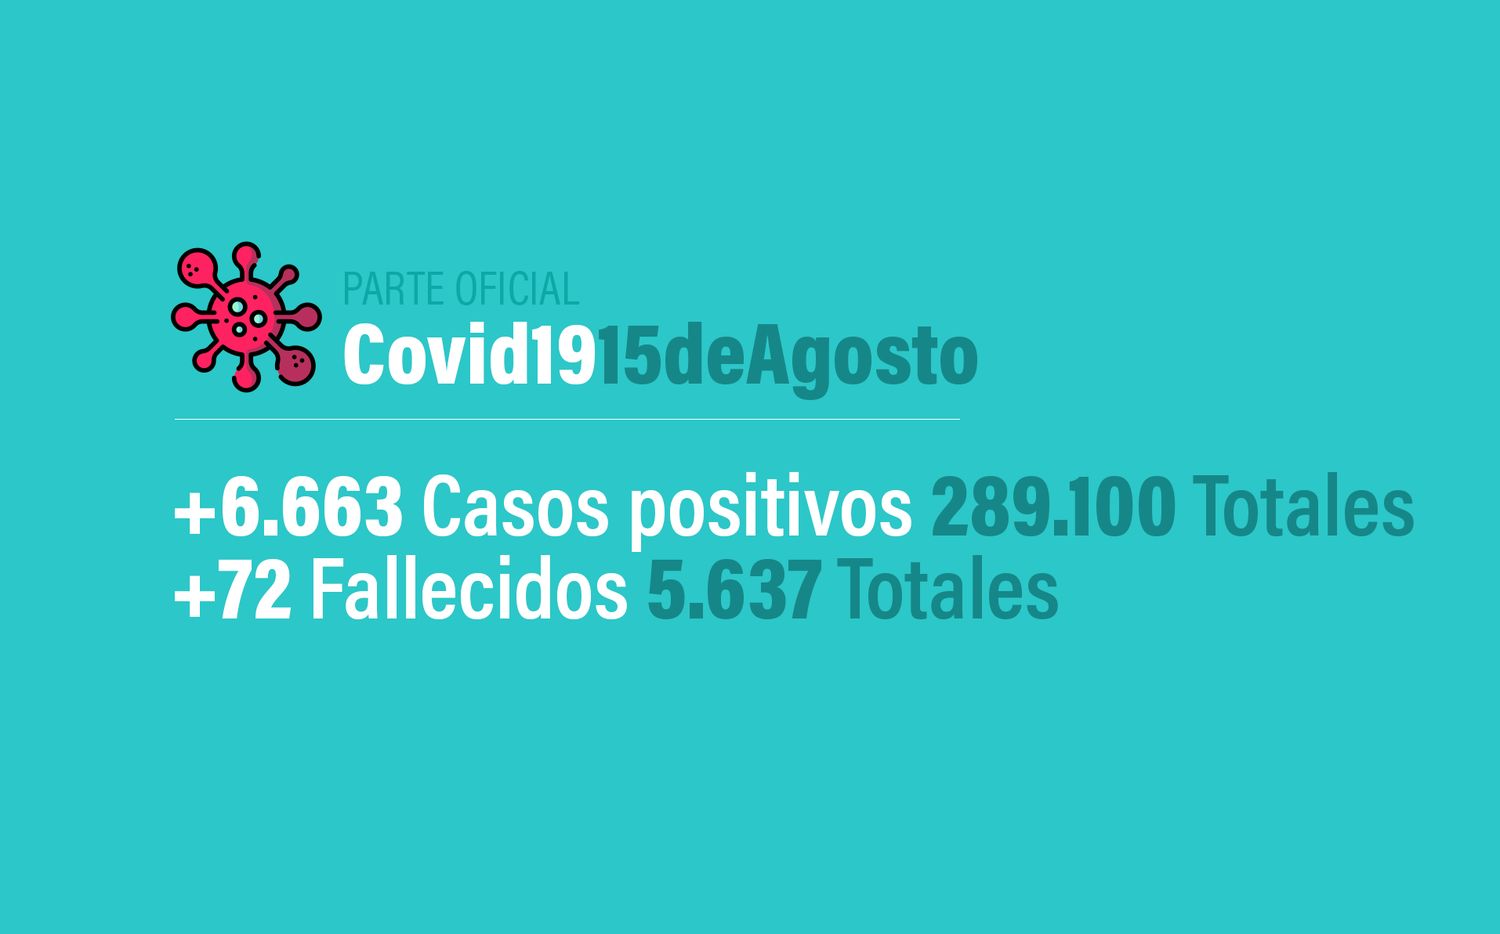 Coronavirus en Argentina: 6.663 nuevos casos, 289.100 confirmados y 5.637 muertes, al 15 de agosto